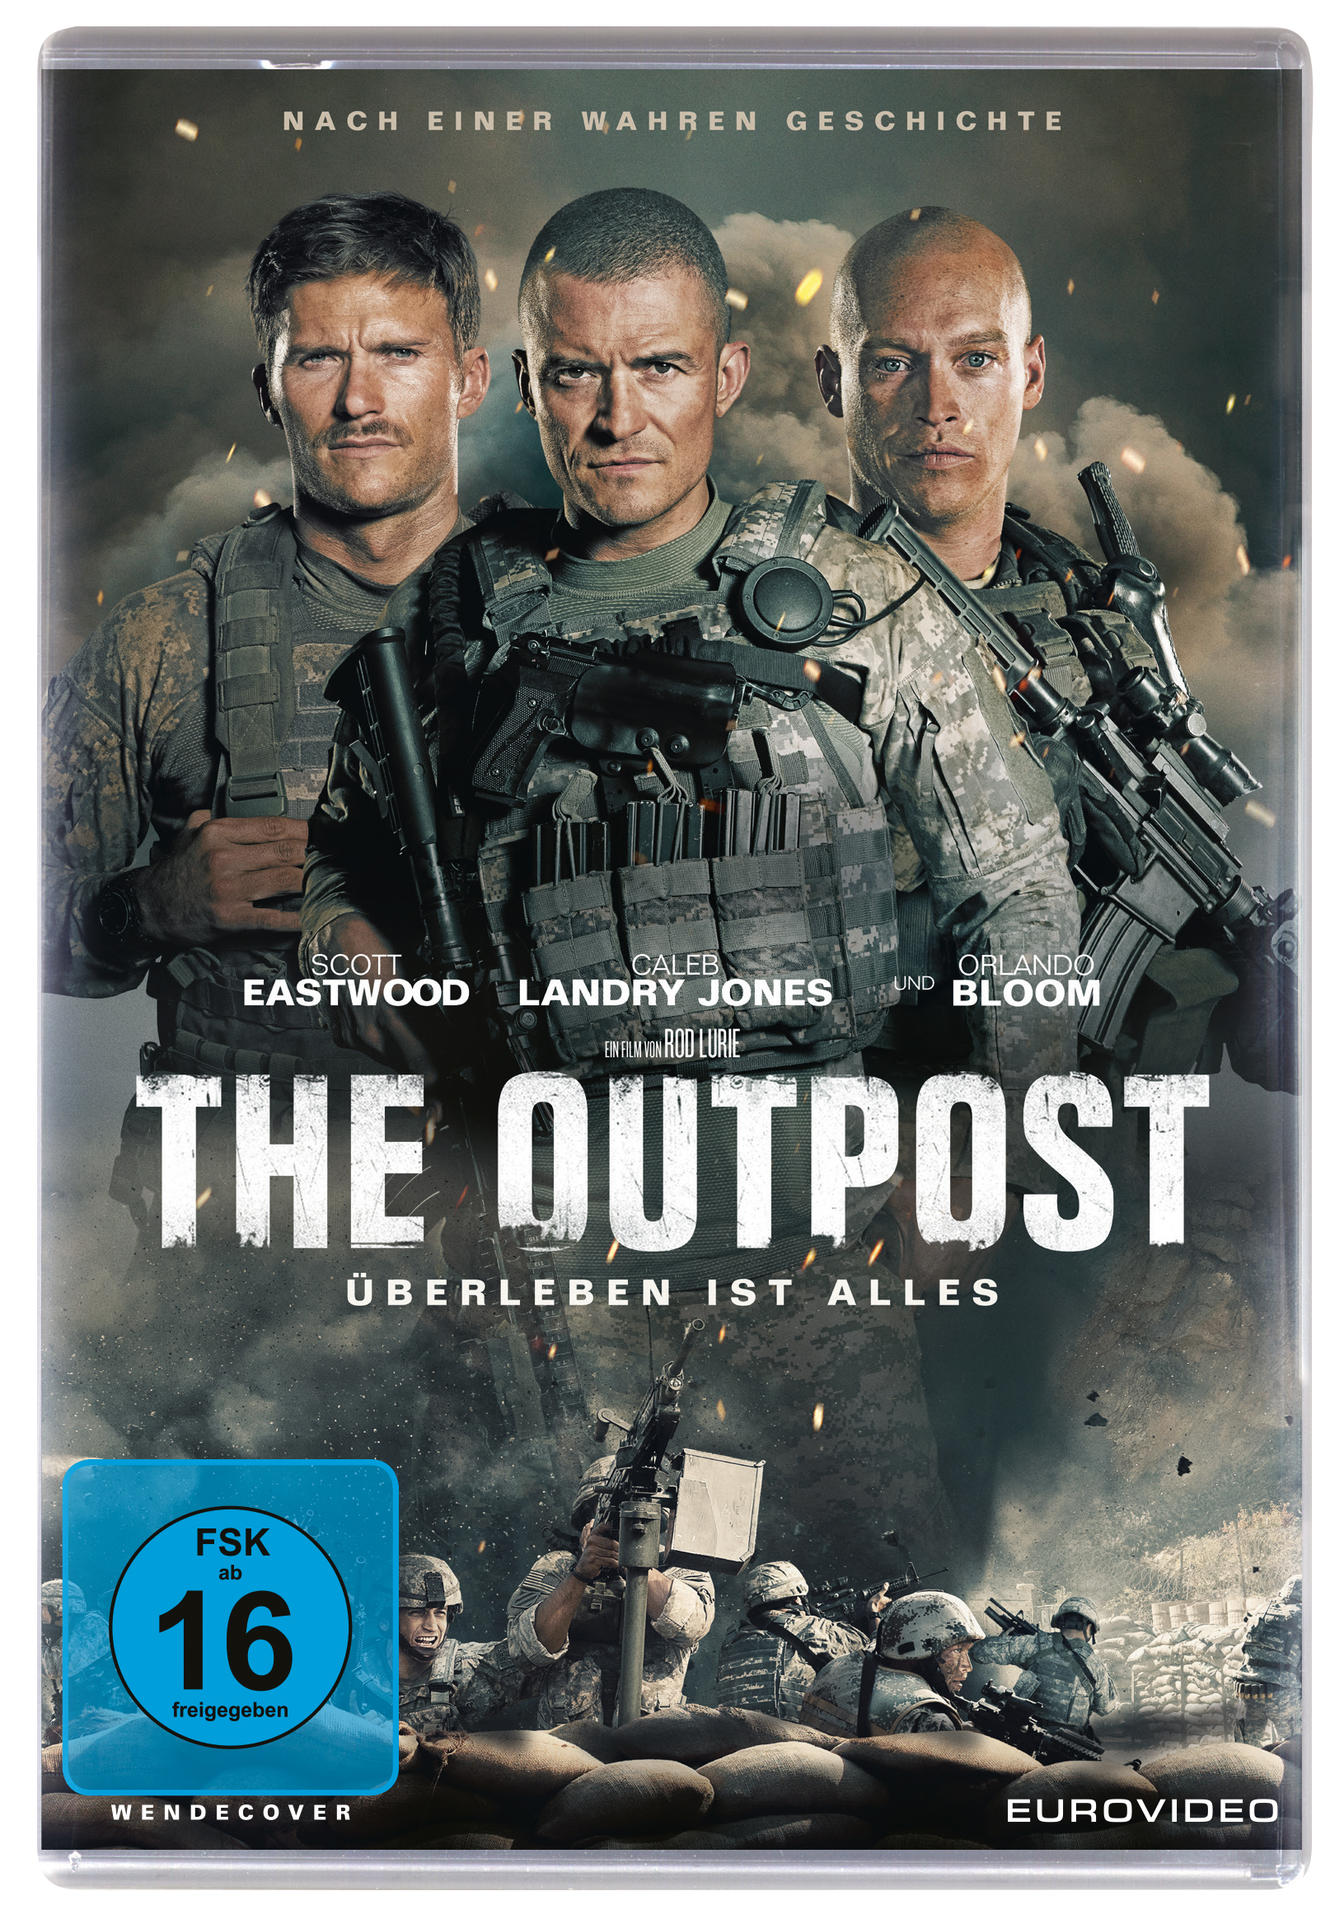 The Outpost - Überleben ist DVD alles